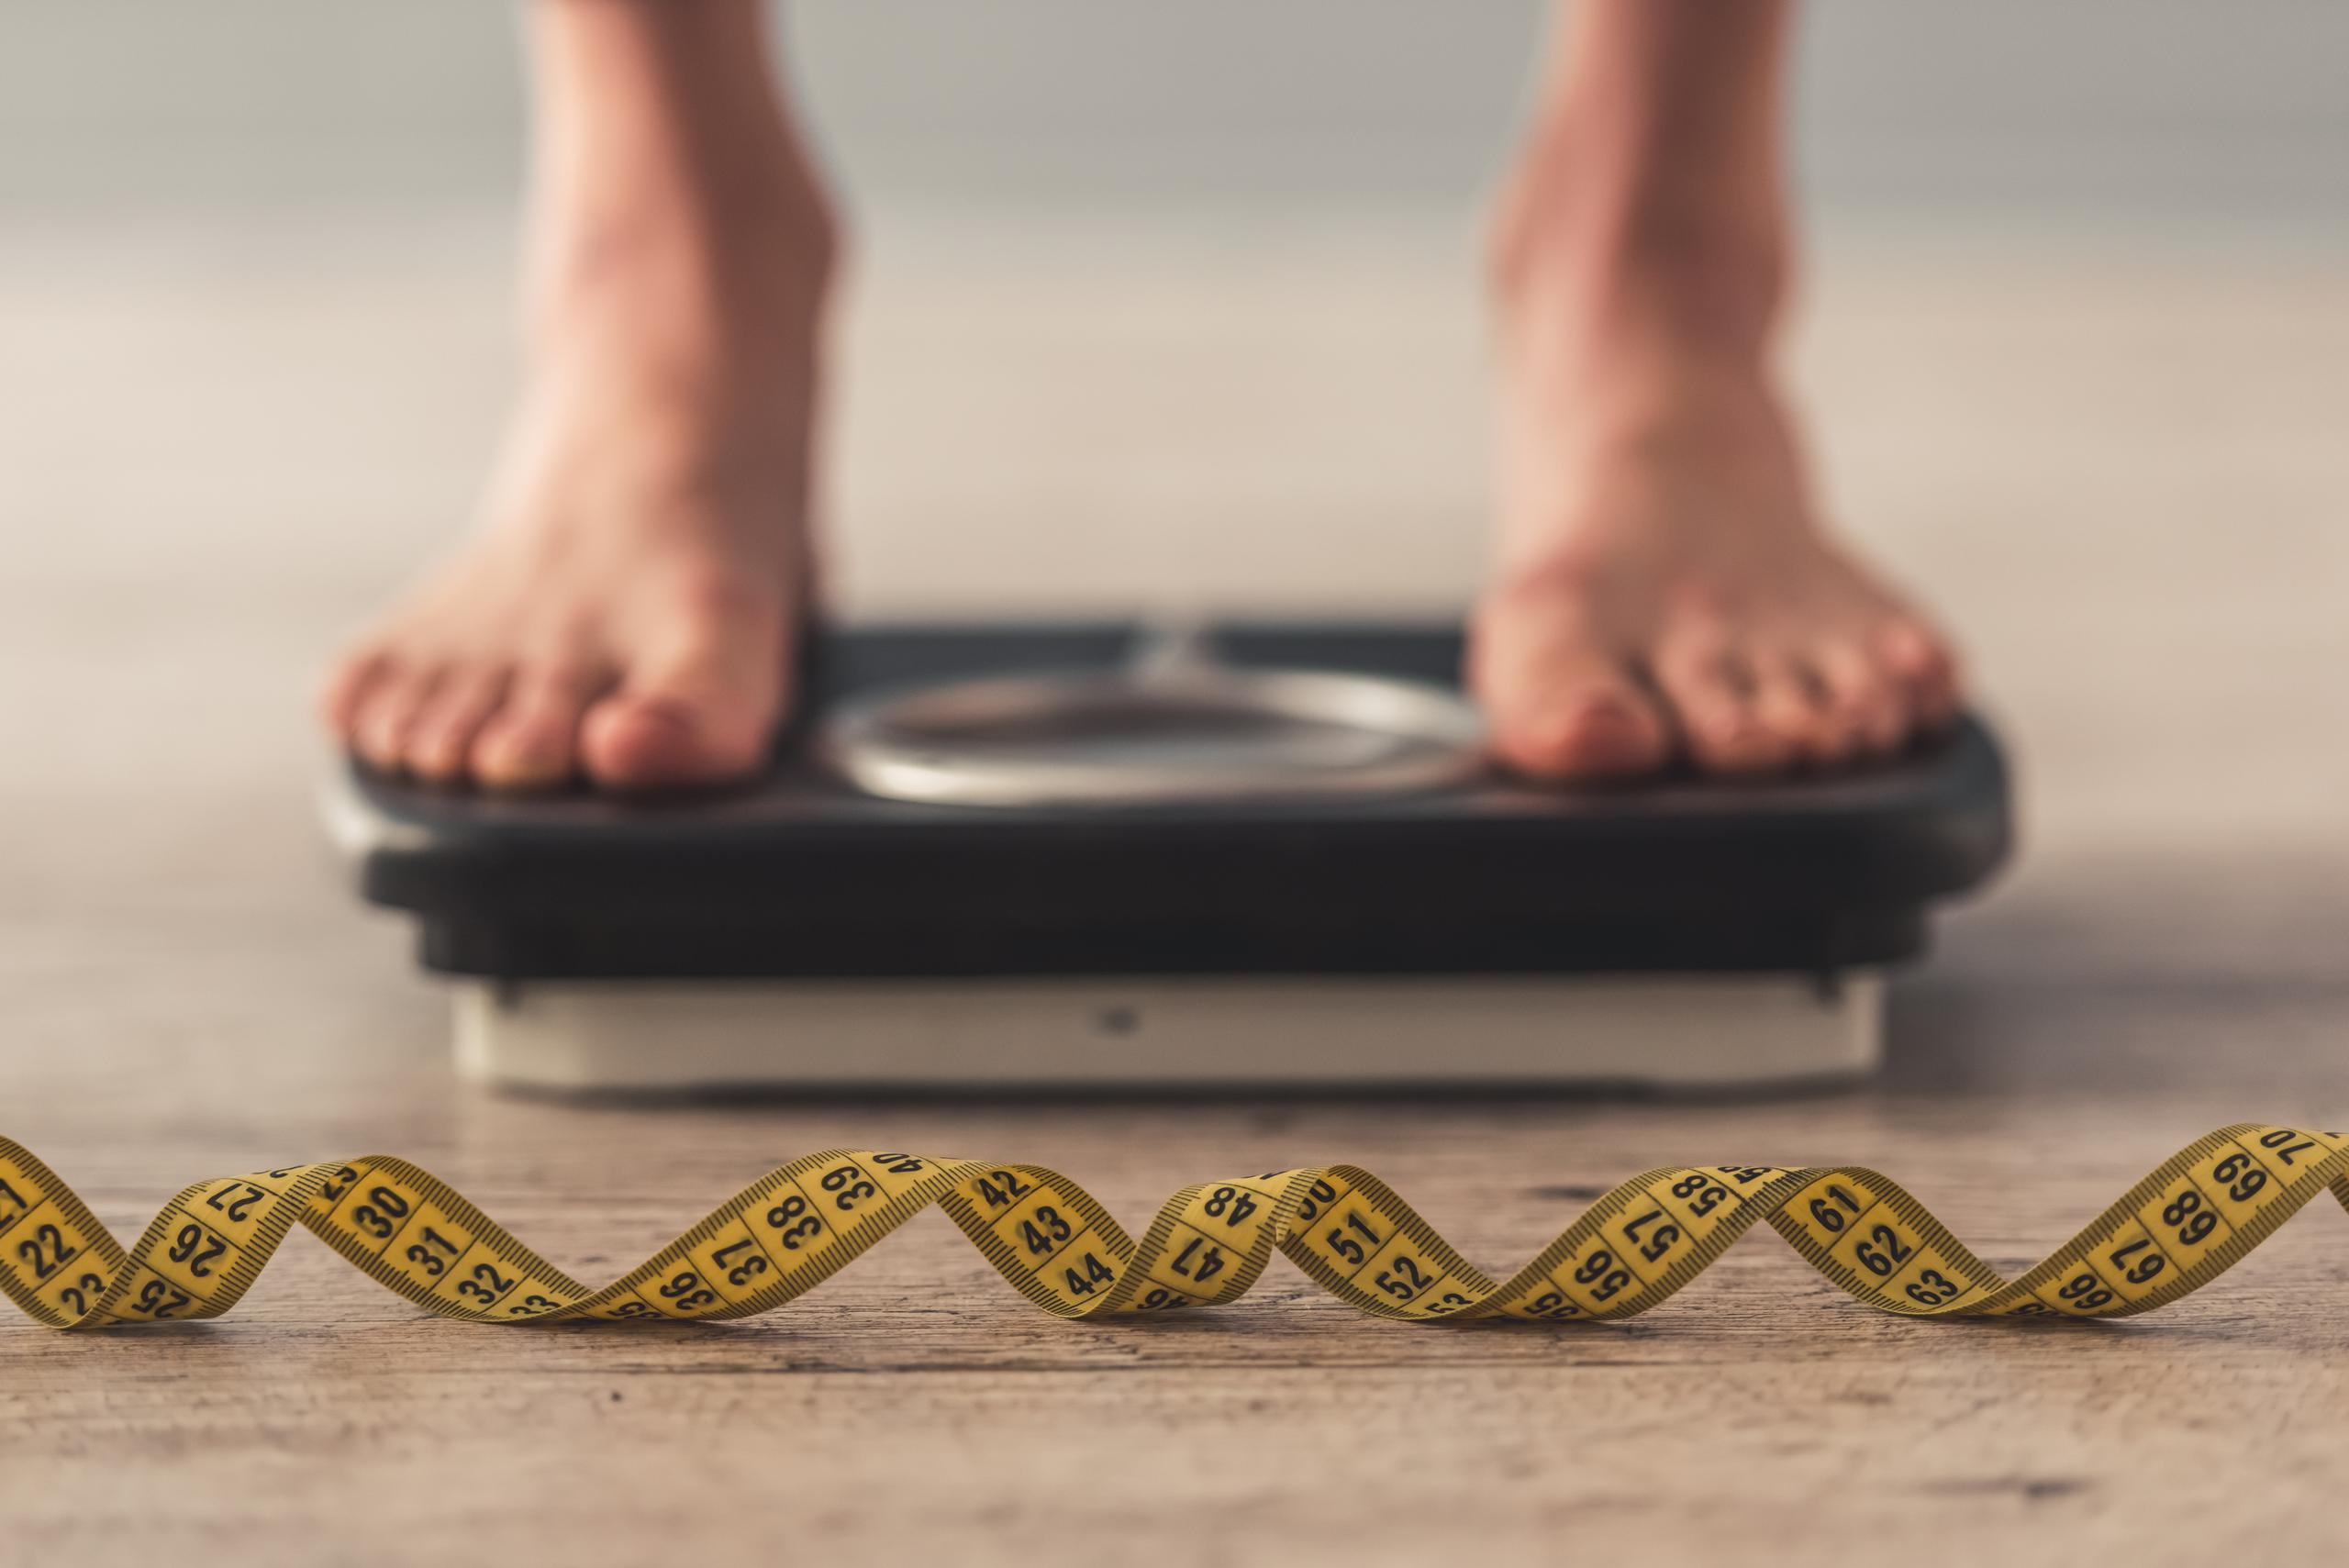 La pérdida y/o aumento de peso  puede verse influenciada por diversos factores, como el metabolismo, la respuesta hormonal, algunos problemas de salud subyacentes e incluso el entorno en el que uno se desenvuelve.